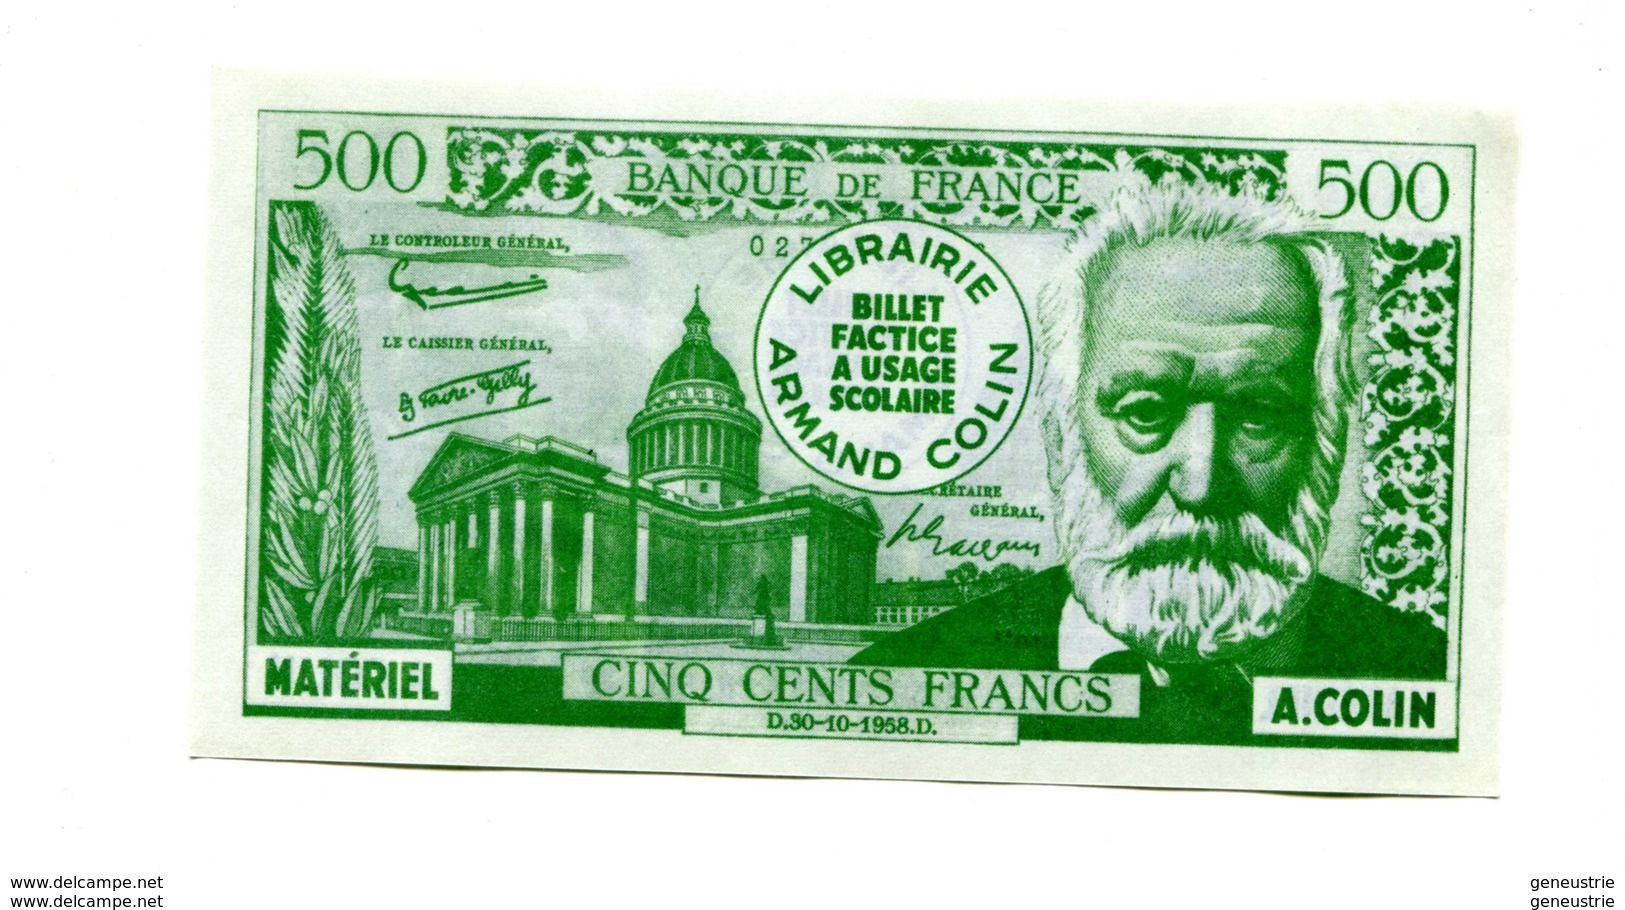 Billet Scolaire école (500F / 5NF Victor Hugo) 1959 - Armand Colin - School Bank Note - Ficción & Especímenes